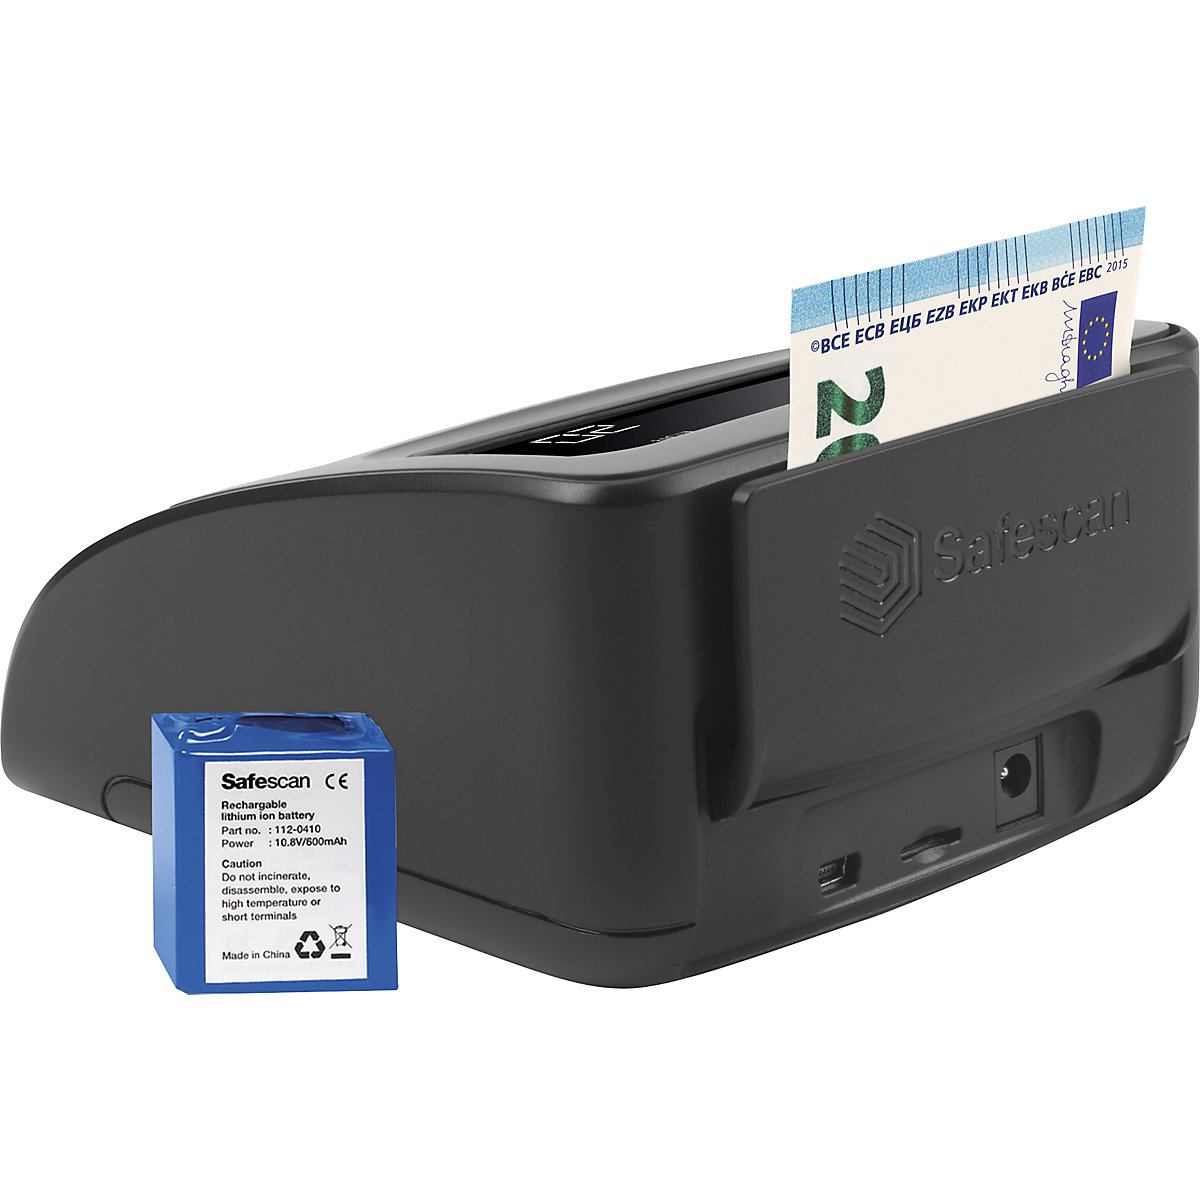 Detector de billetes falsos – Safescan (Imagen del producto 16)-15